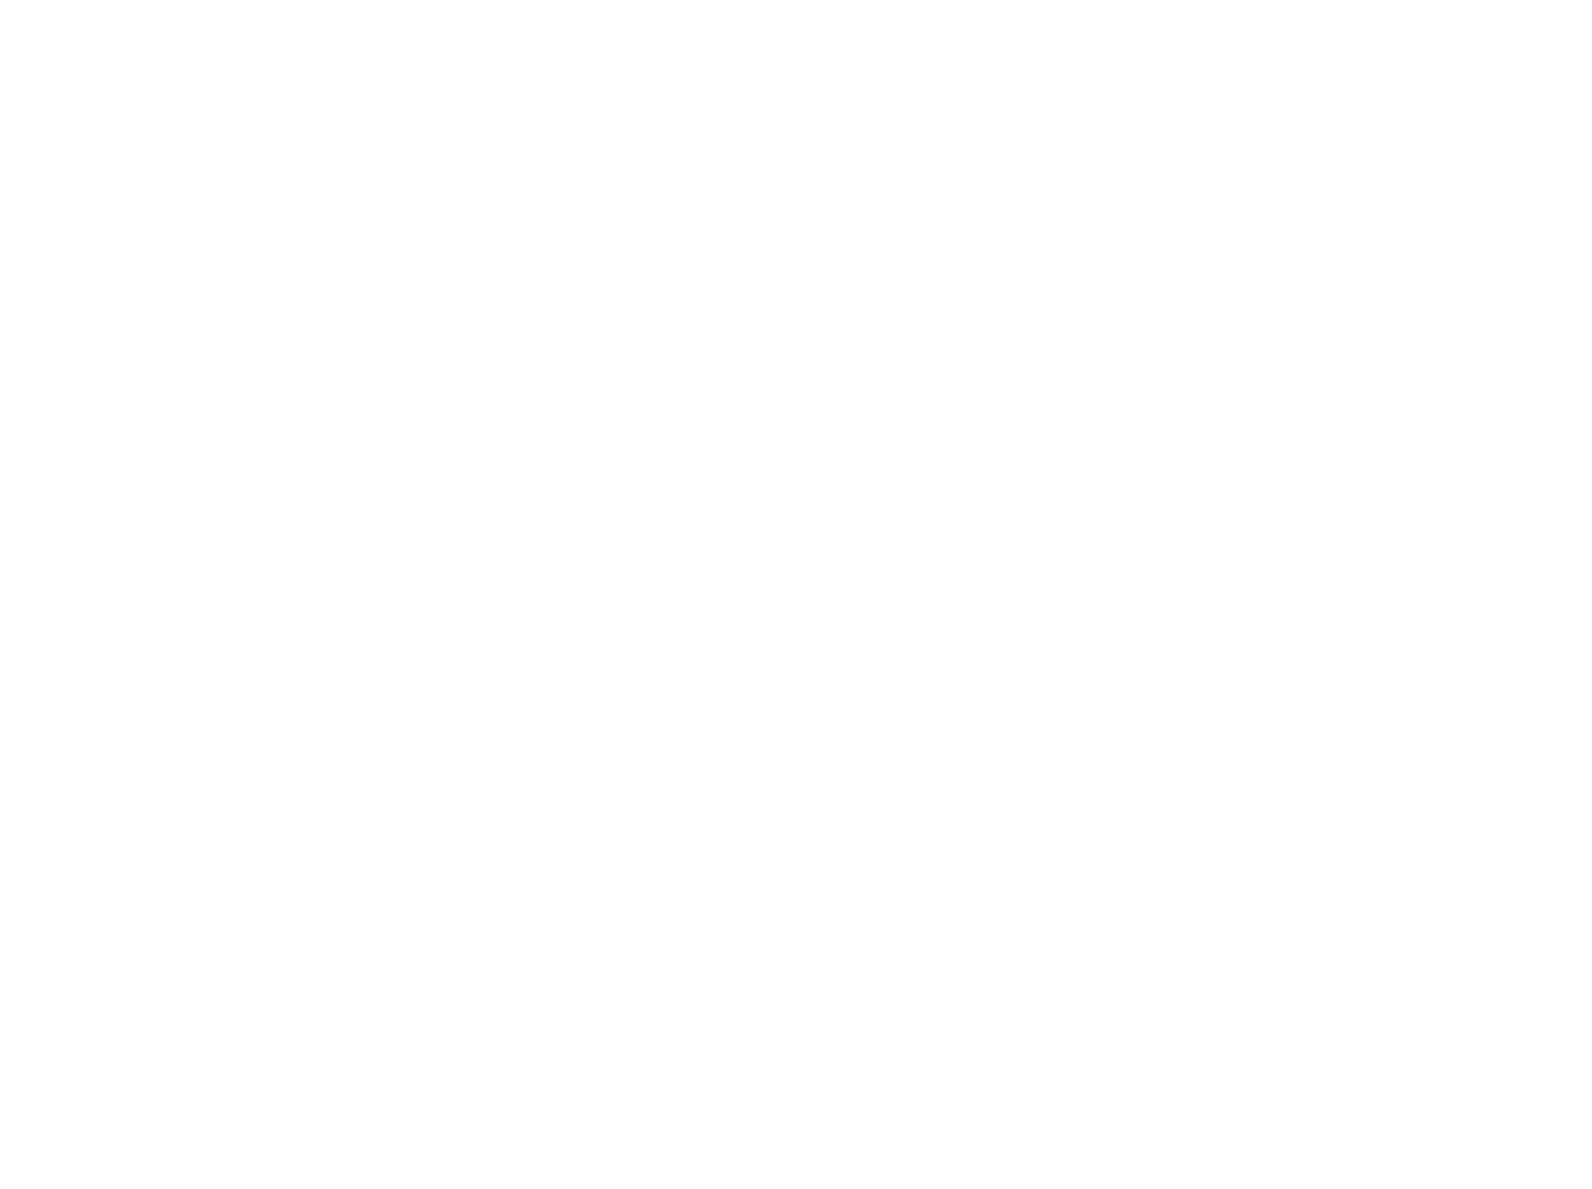 ORION logo for dark backgrounds (transparent PNG)